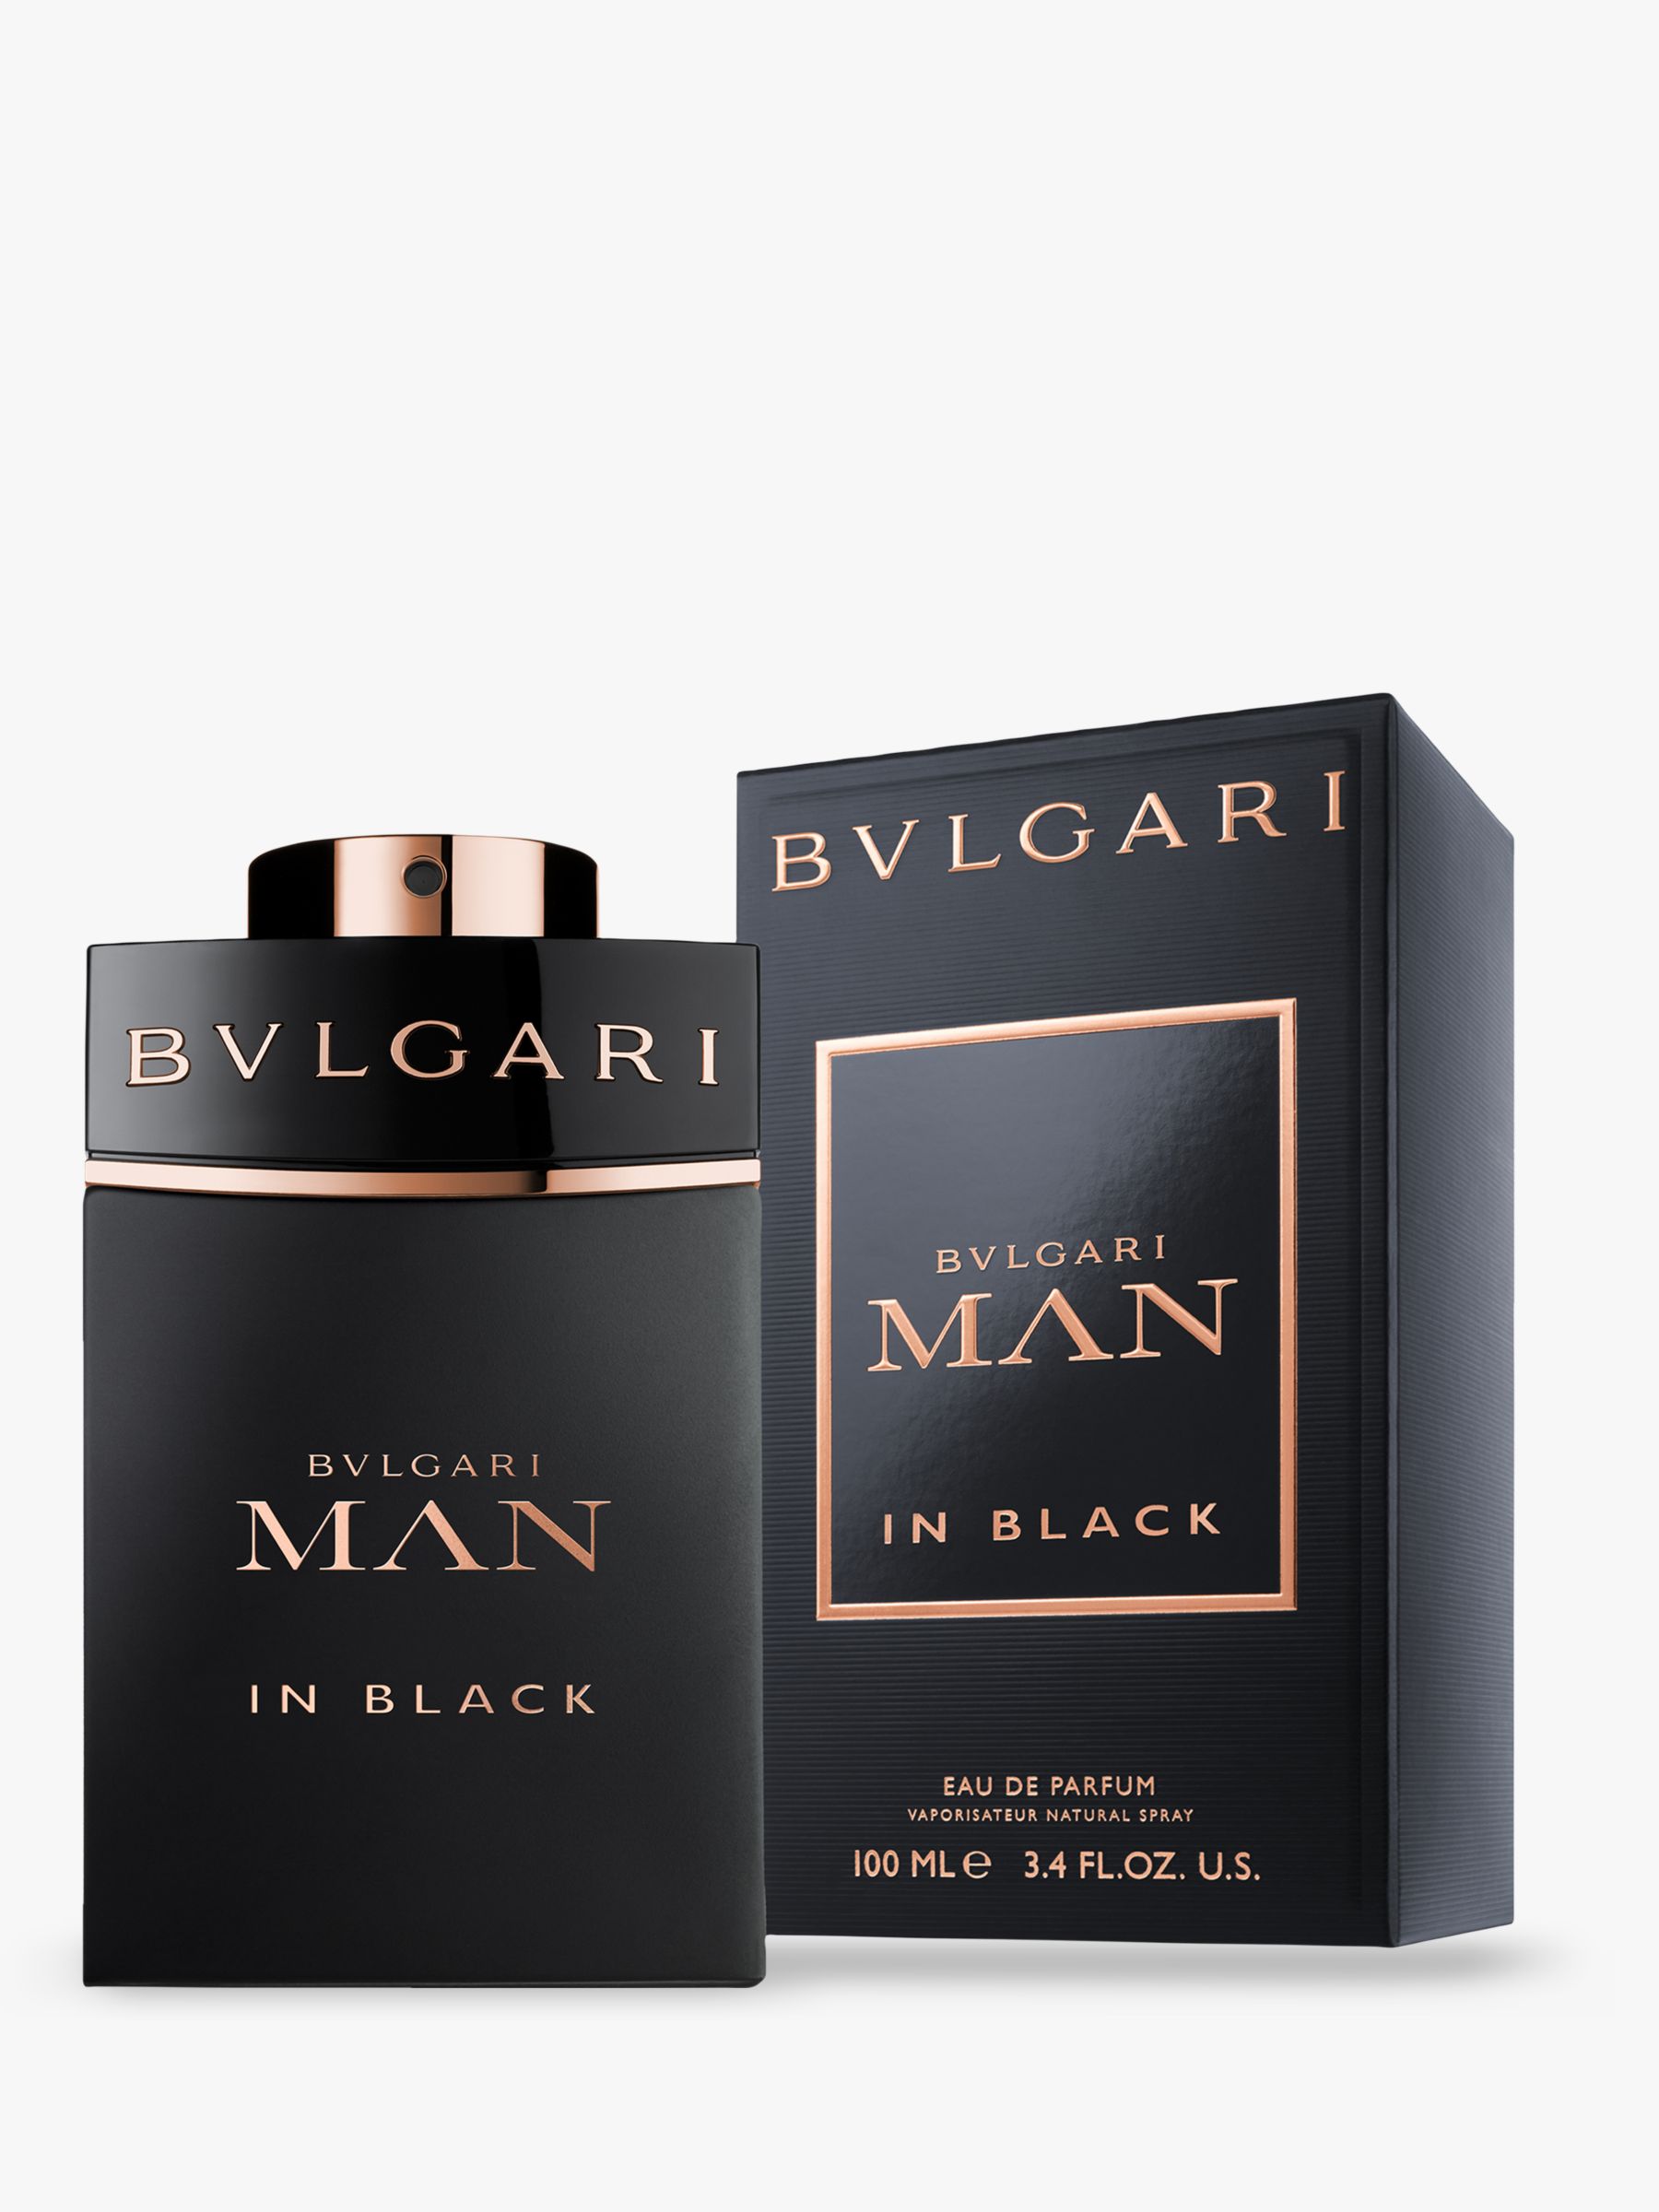 BVLGARI Man In Black Eau de Parfum at 